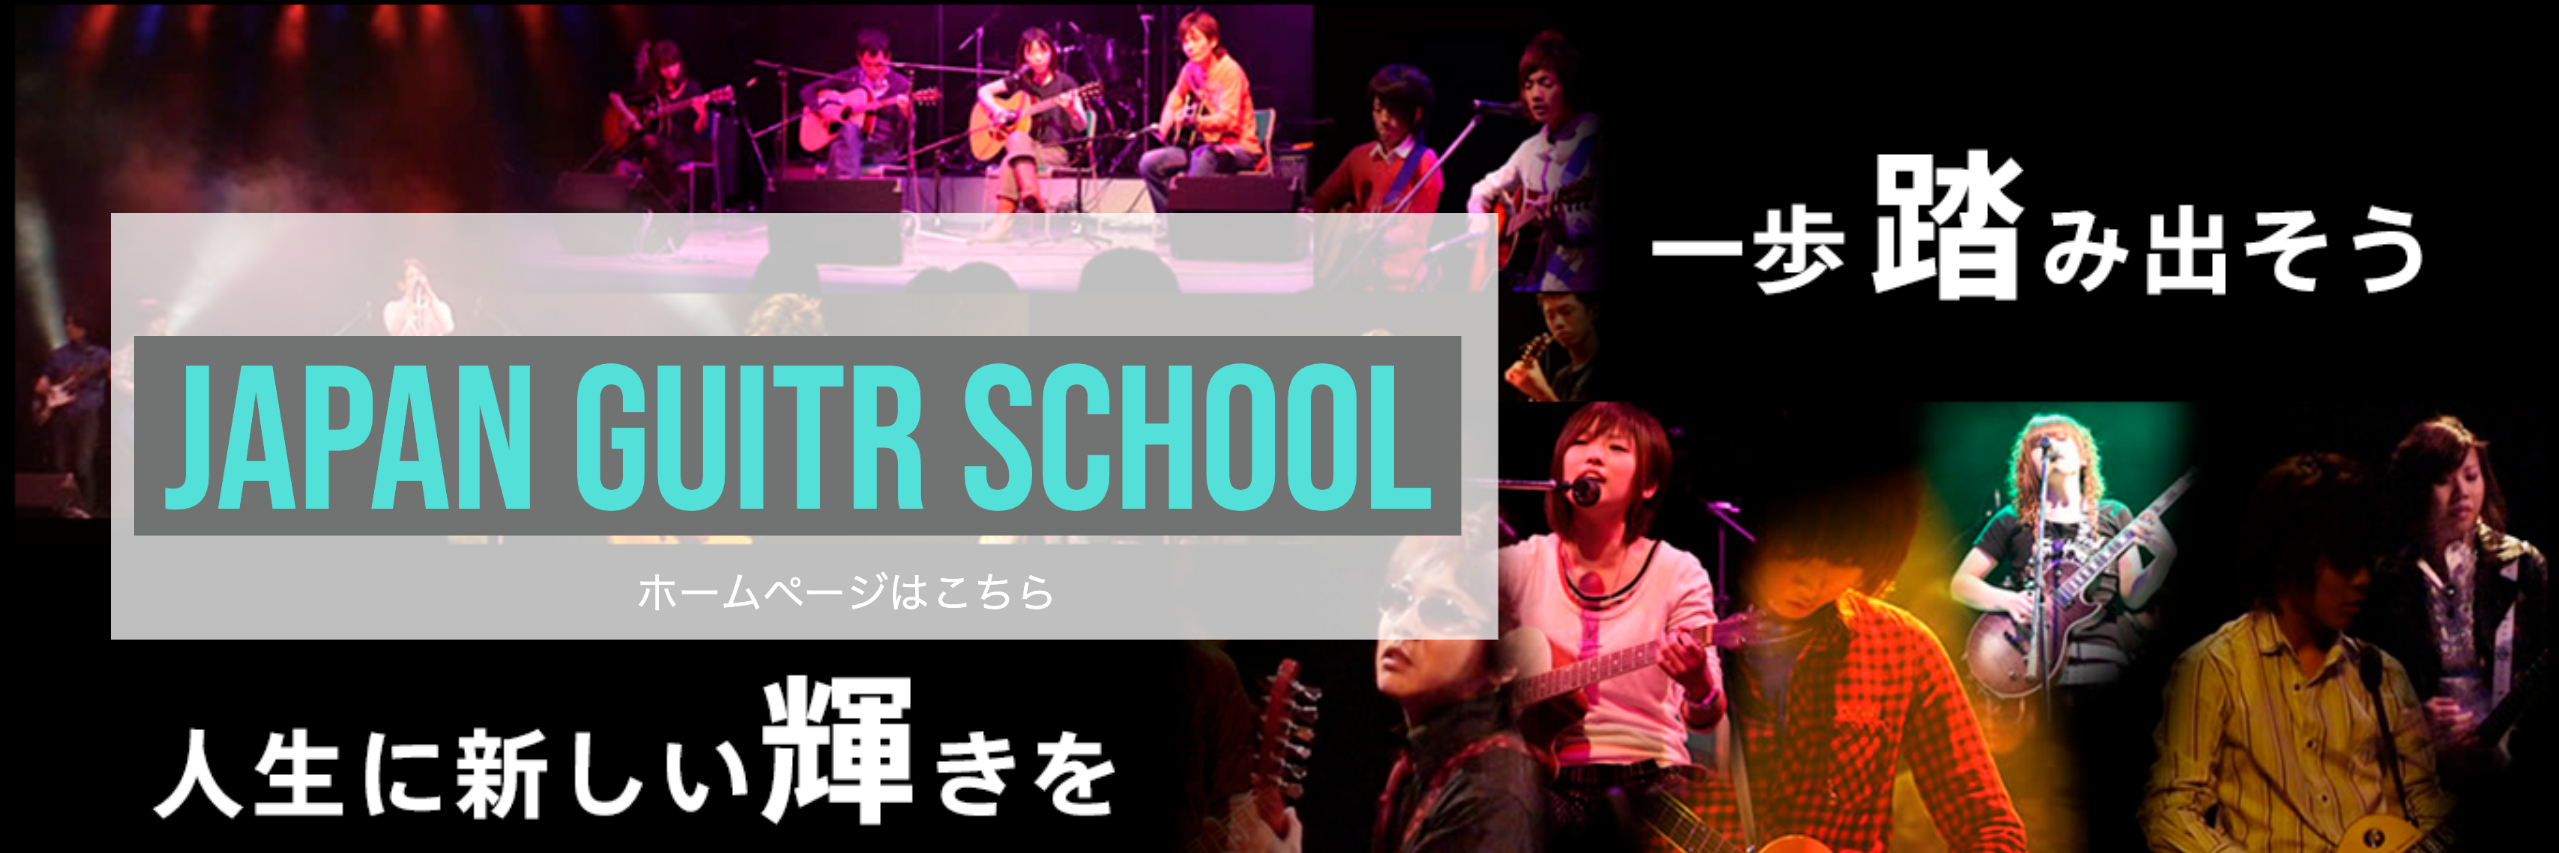 大阪、梅田、心斎橋、西宮、三宮のギター教室 ジャパンギタースクール